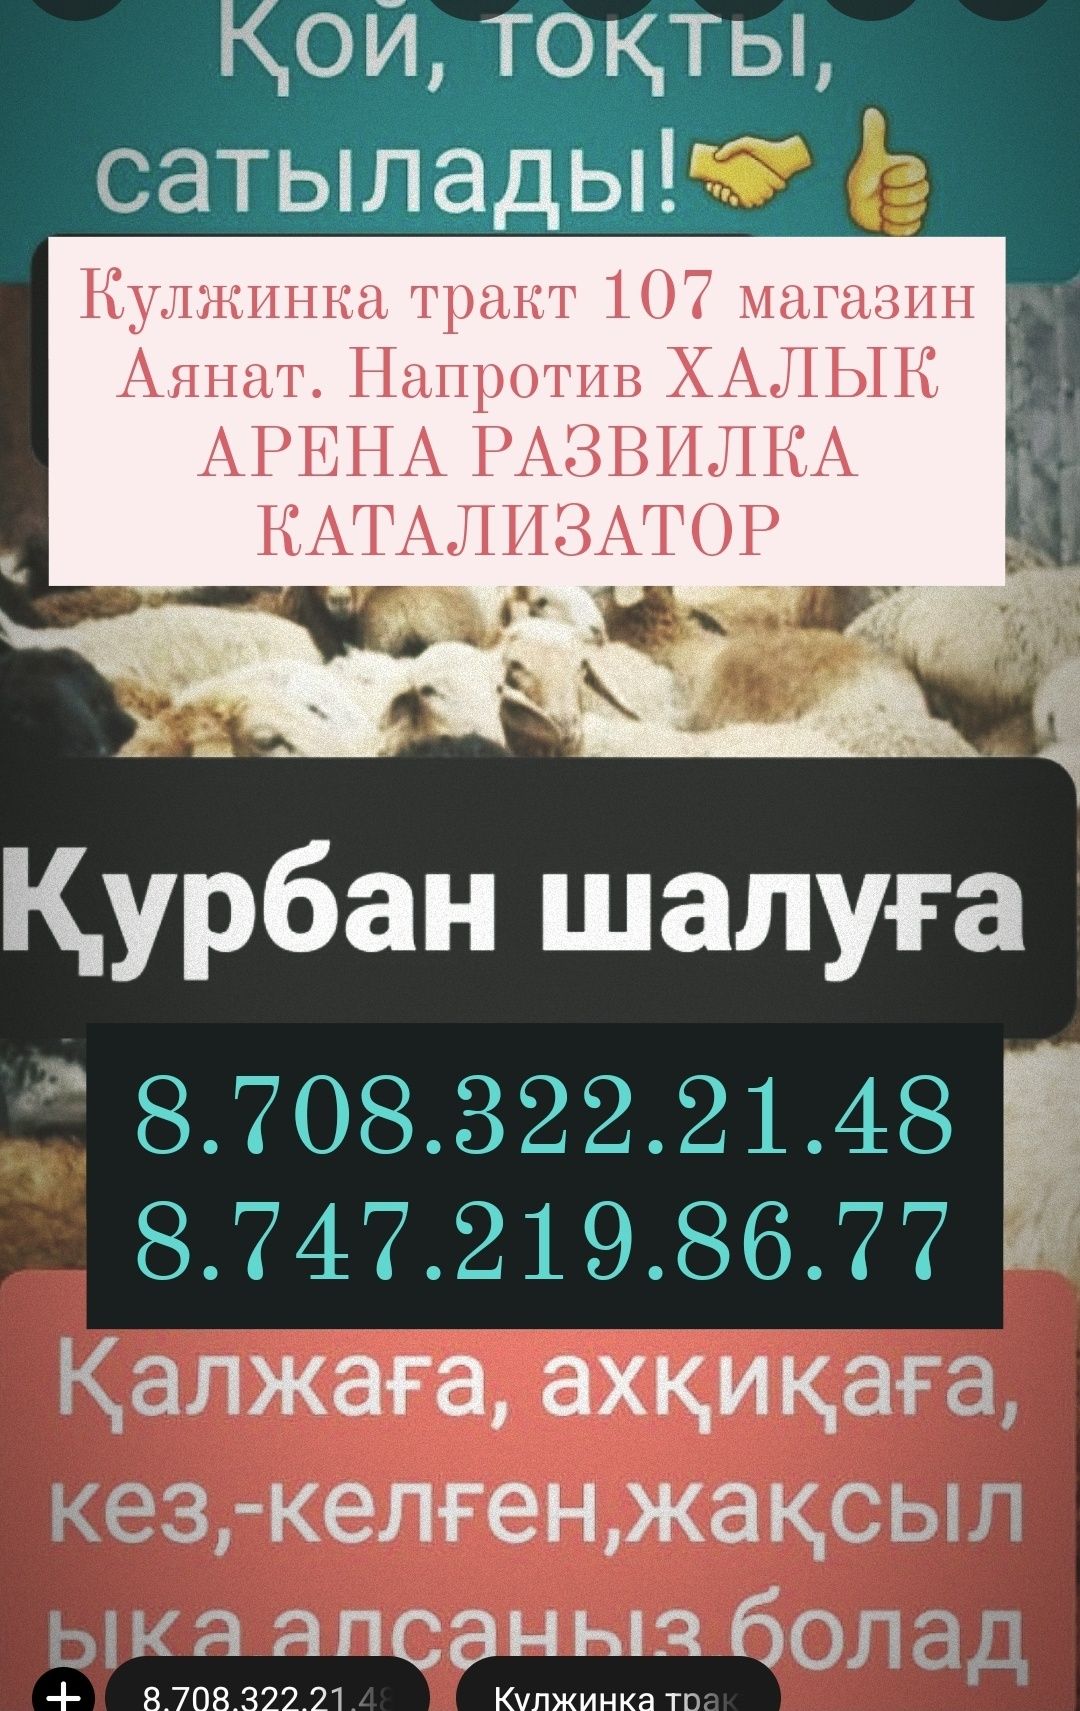 Кой Бараны токтушки продаётся 35000тысч г Алматы.